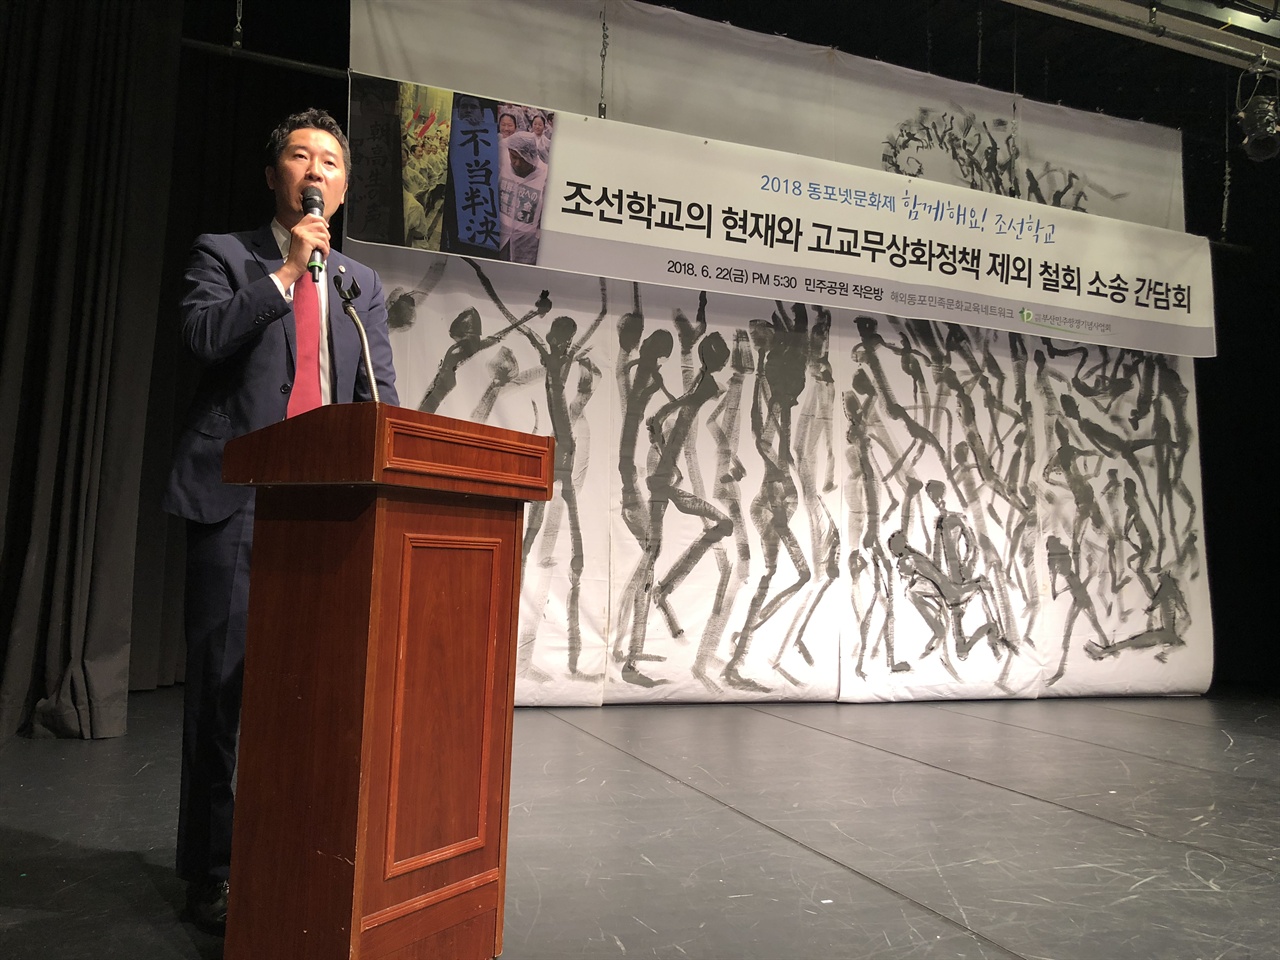  김민관 변호사는 큐슈조선고급학교 출신으로 조선대학교를 졸업, 현재는 큐슈조선고급학교의 고교무상화소송을 이끌고 있다.